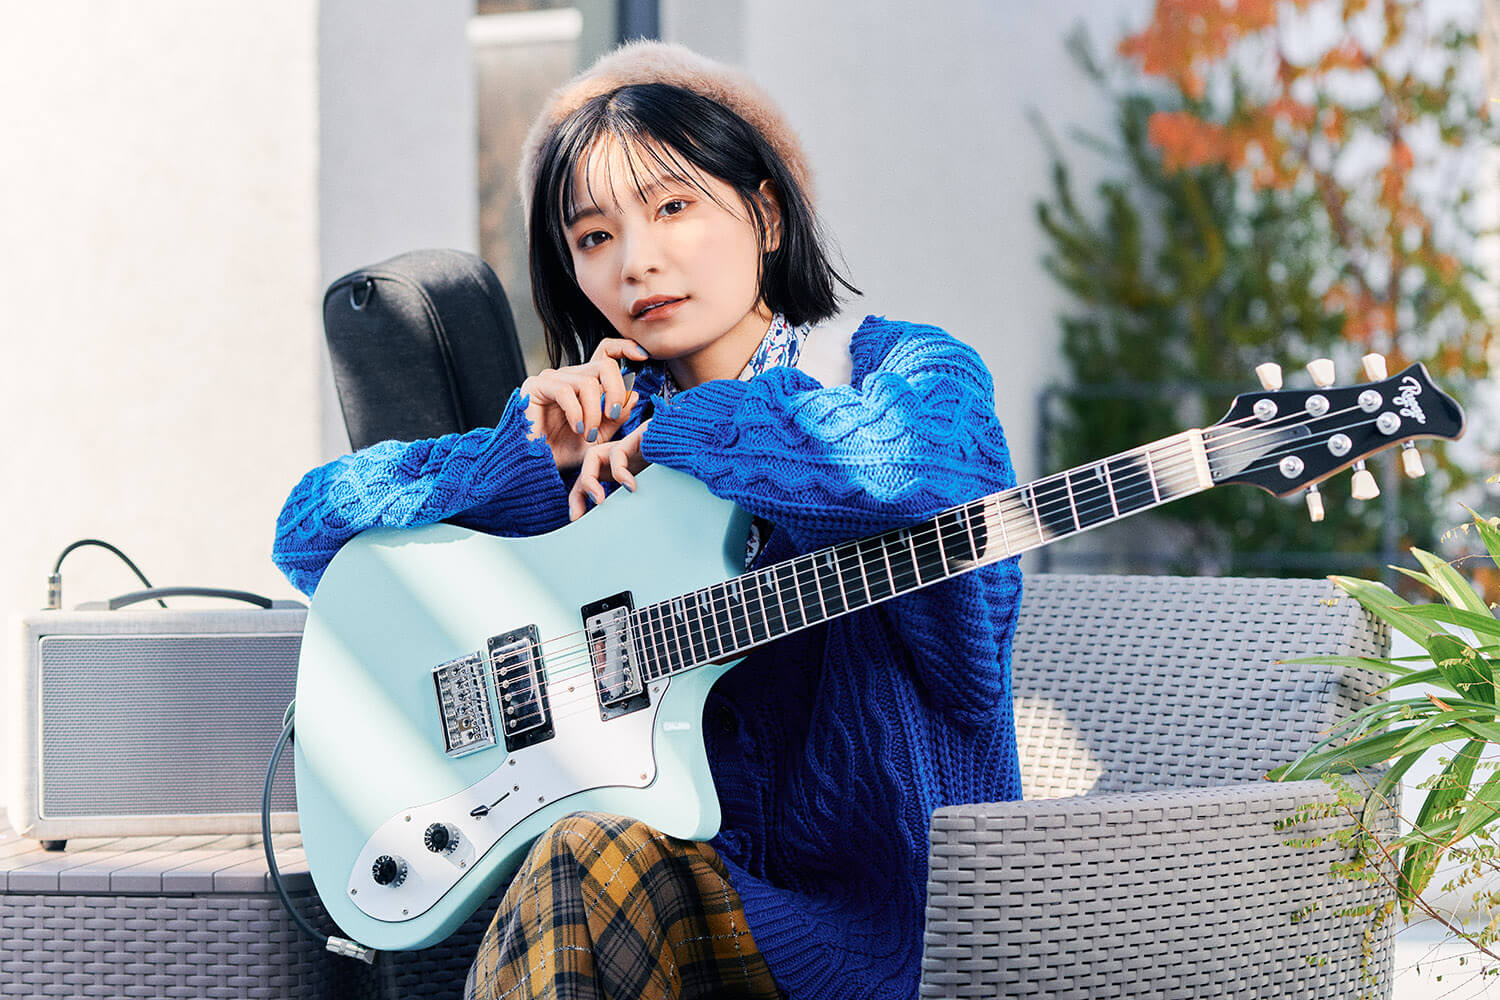 Ryogaのギターを抱える女性